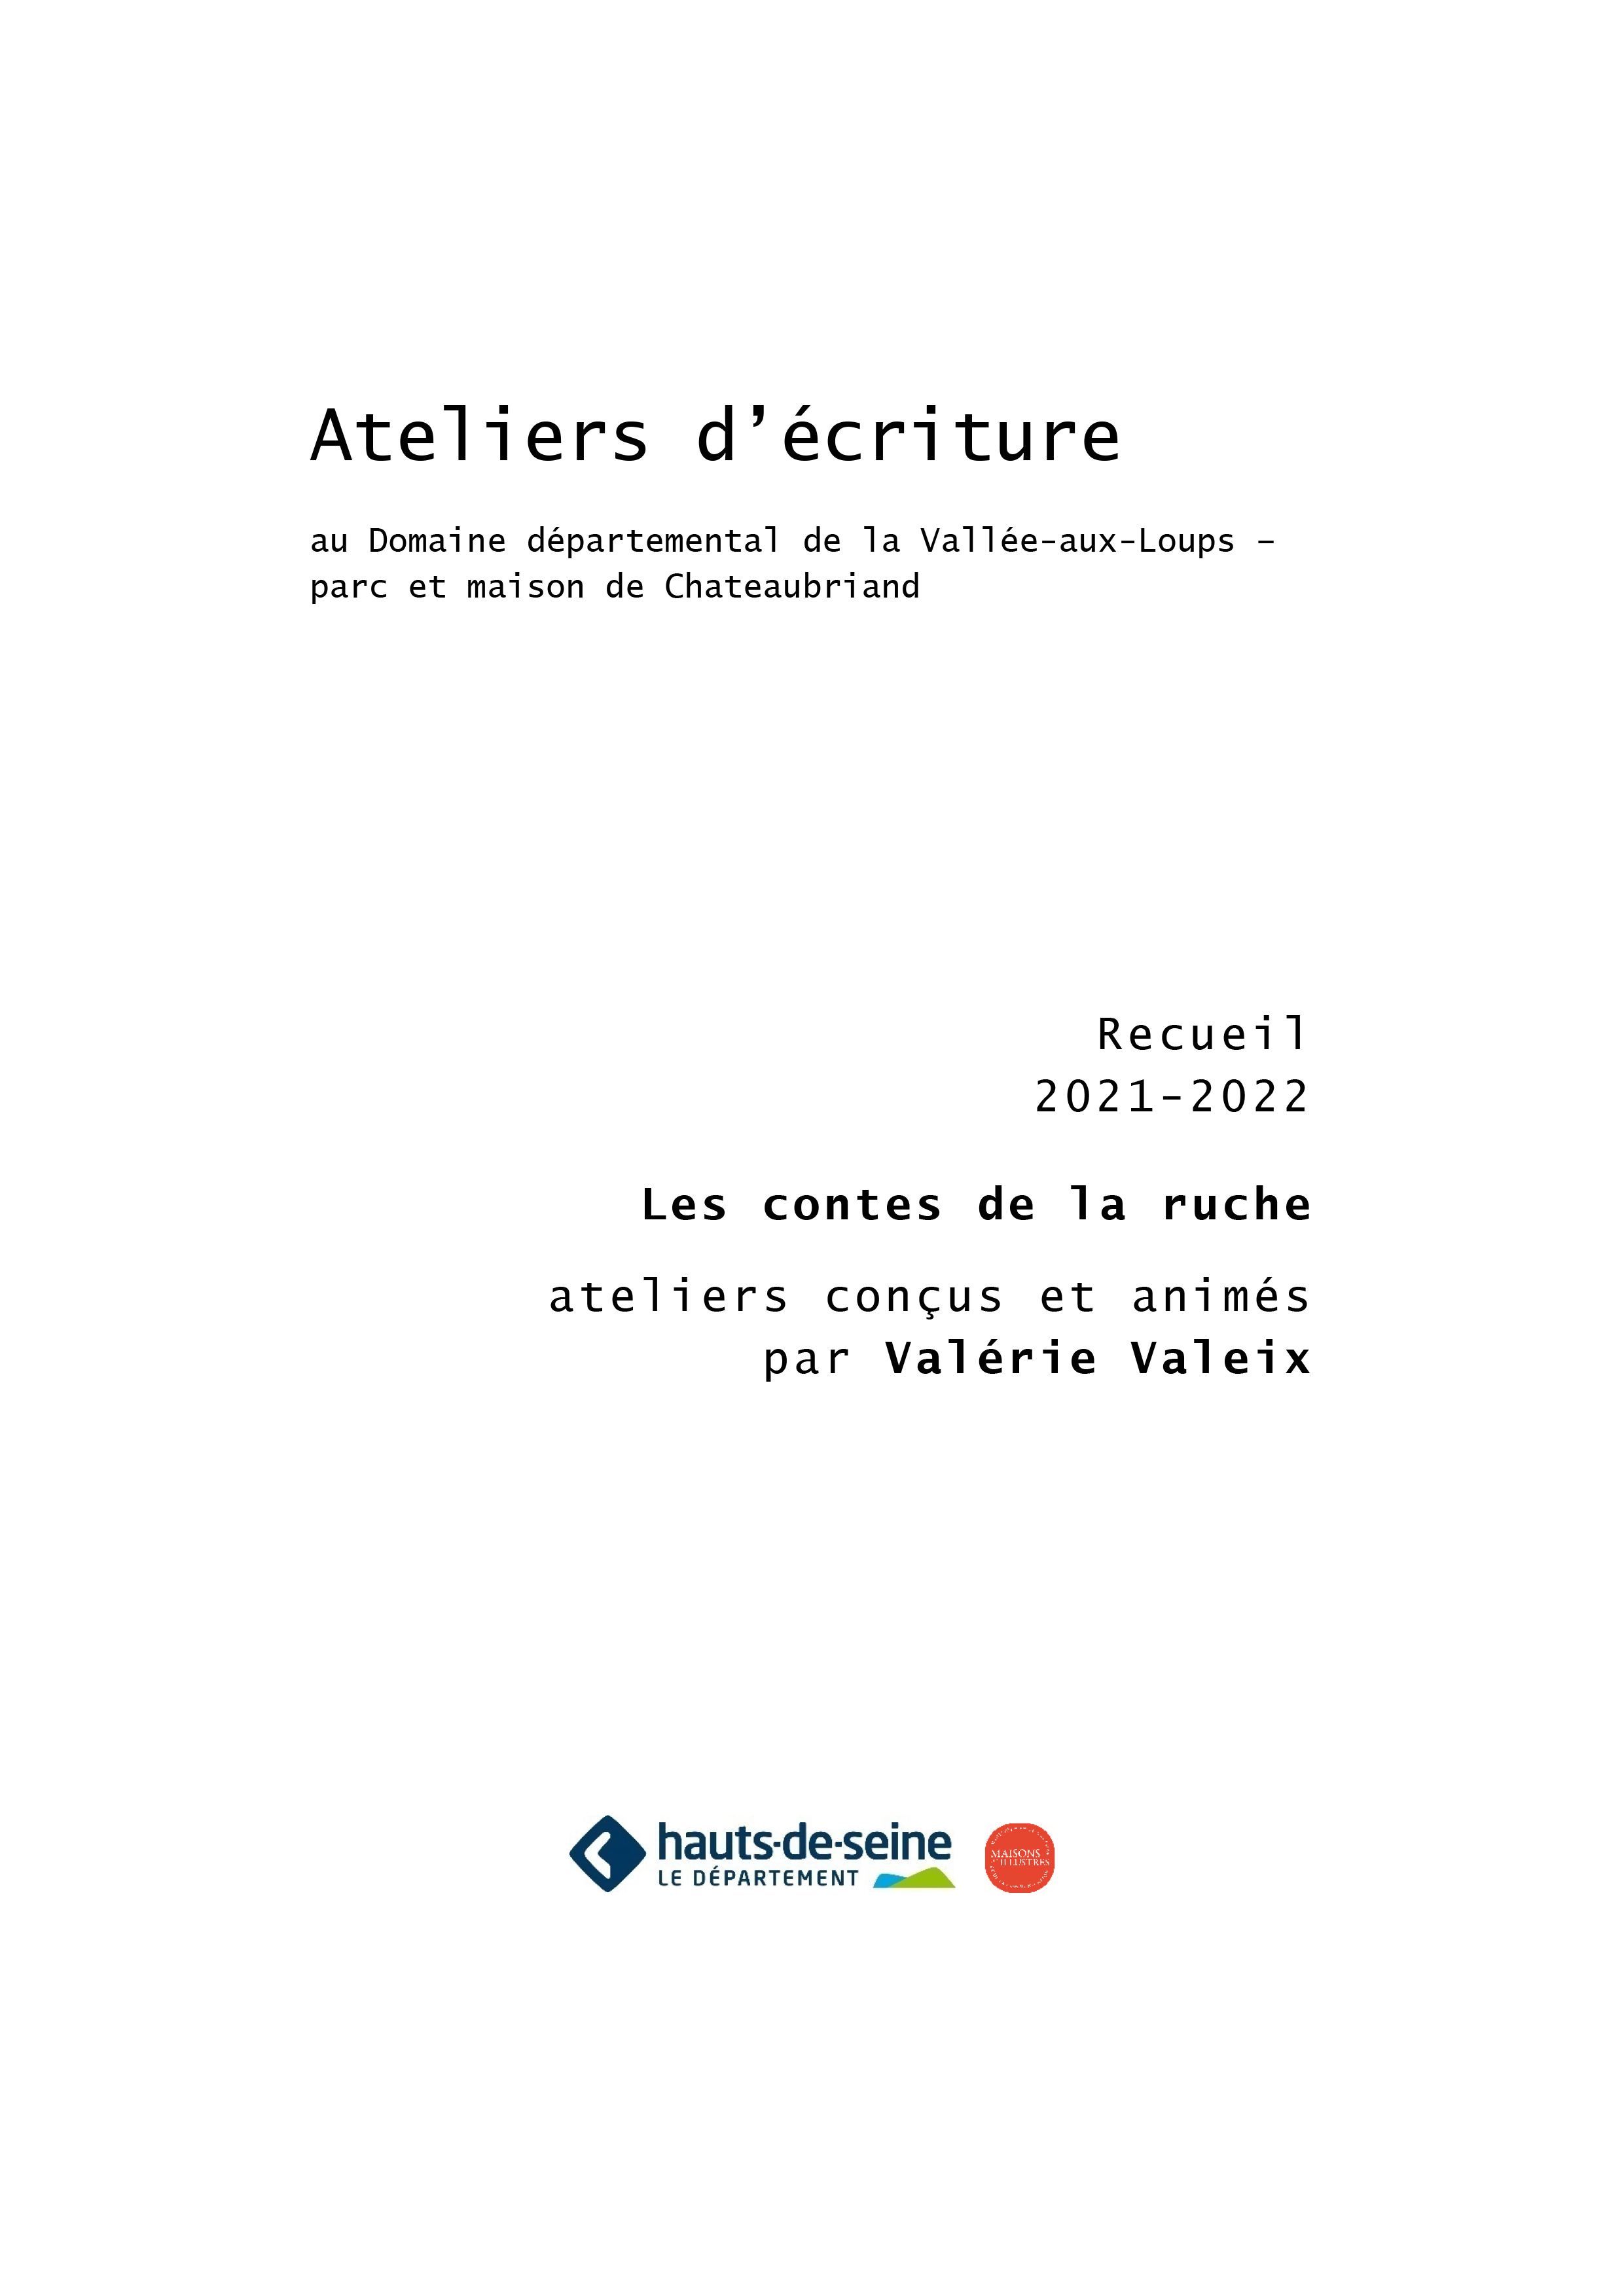 Recueil ateliers ecriture Valerie Valeix 2022 COUVERTURE